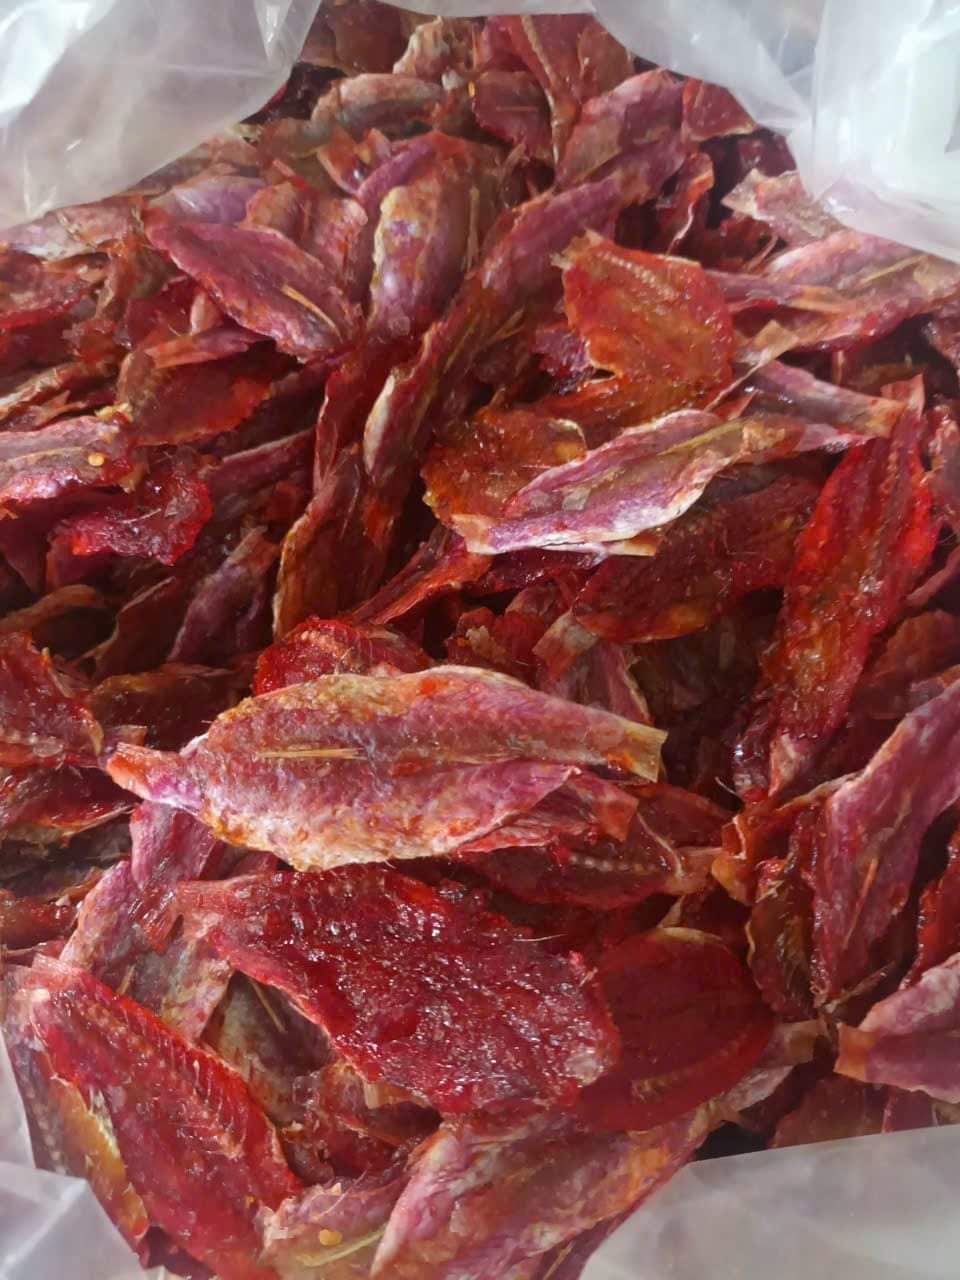 khô cá phèn đỏ ướp gia vị vừa ăn, hàng thơm ngon chất lượng